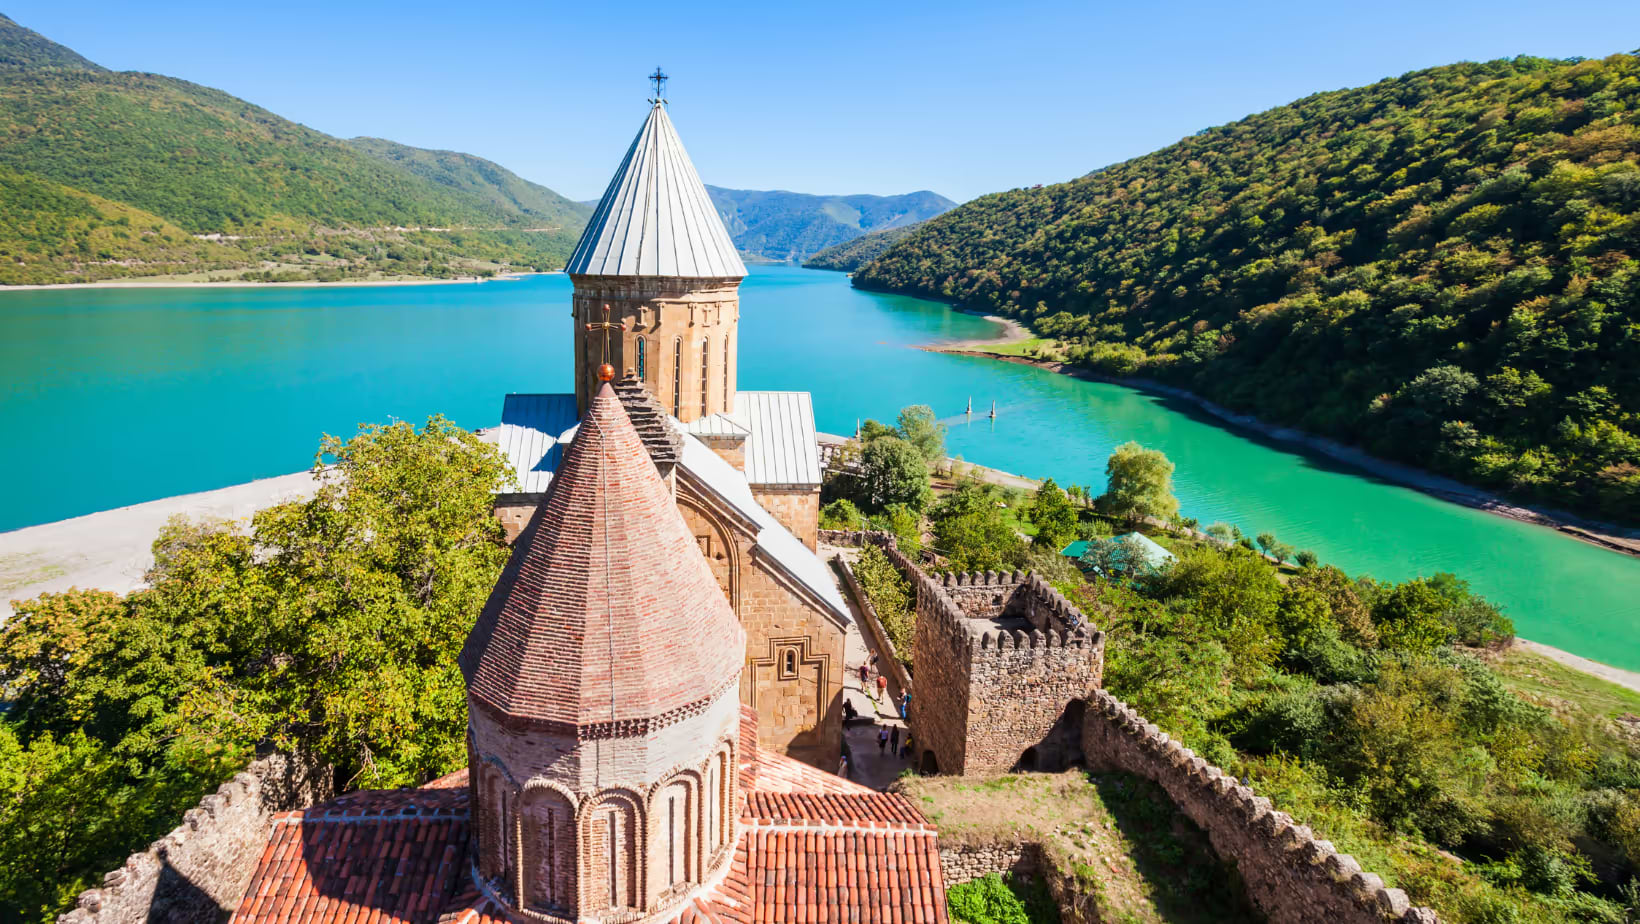 A Georgian castle against a blue lake